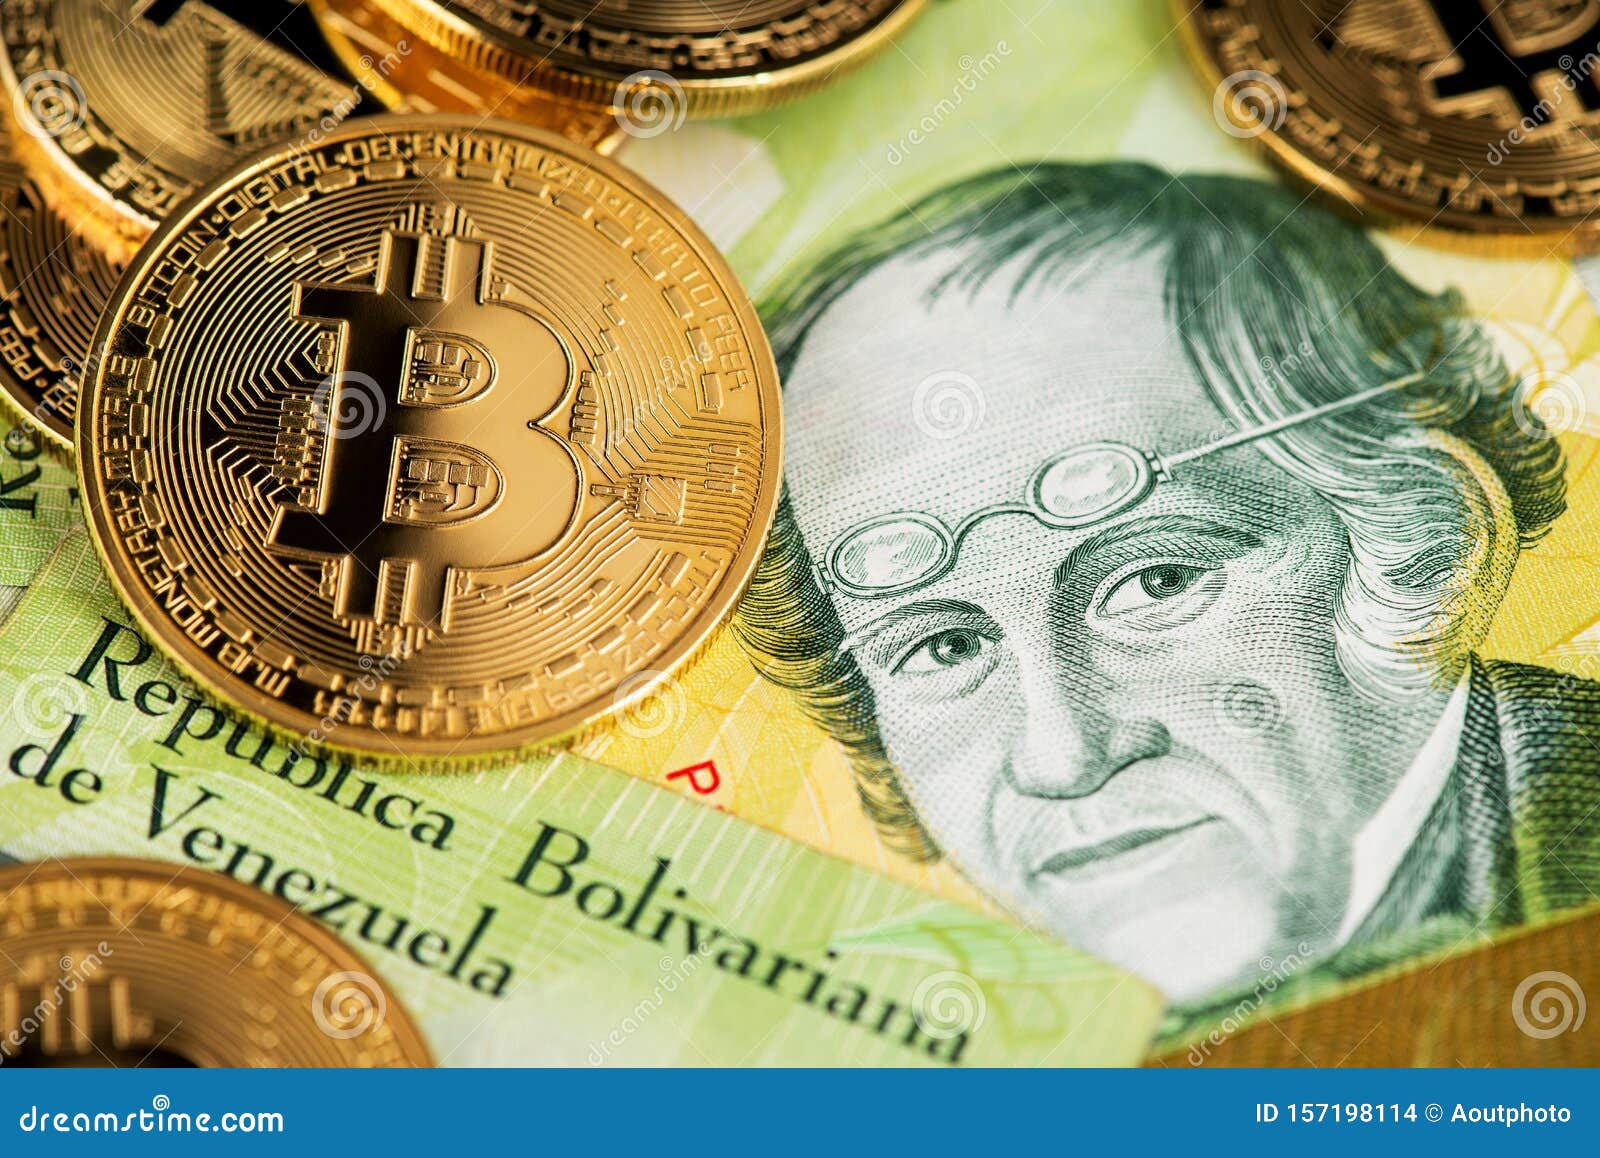 bitcoin bolivar capitalizzazione del mercato totale btc